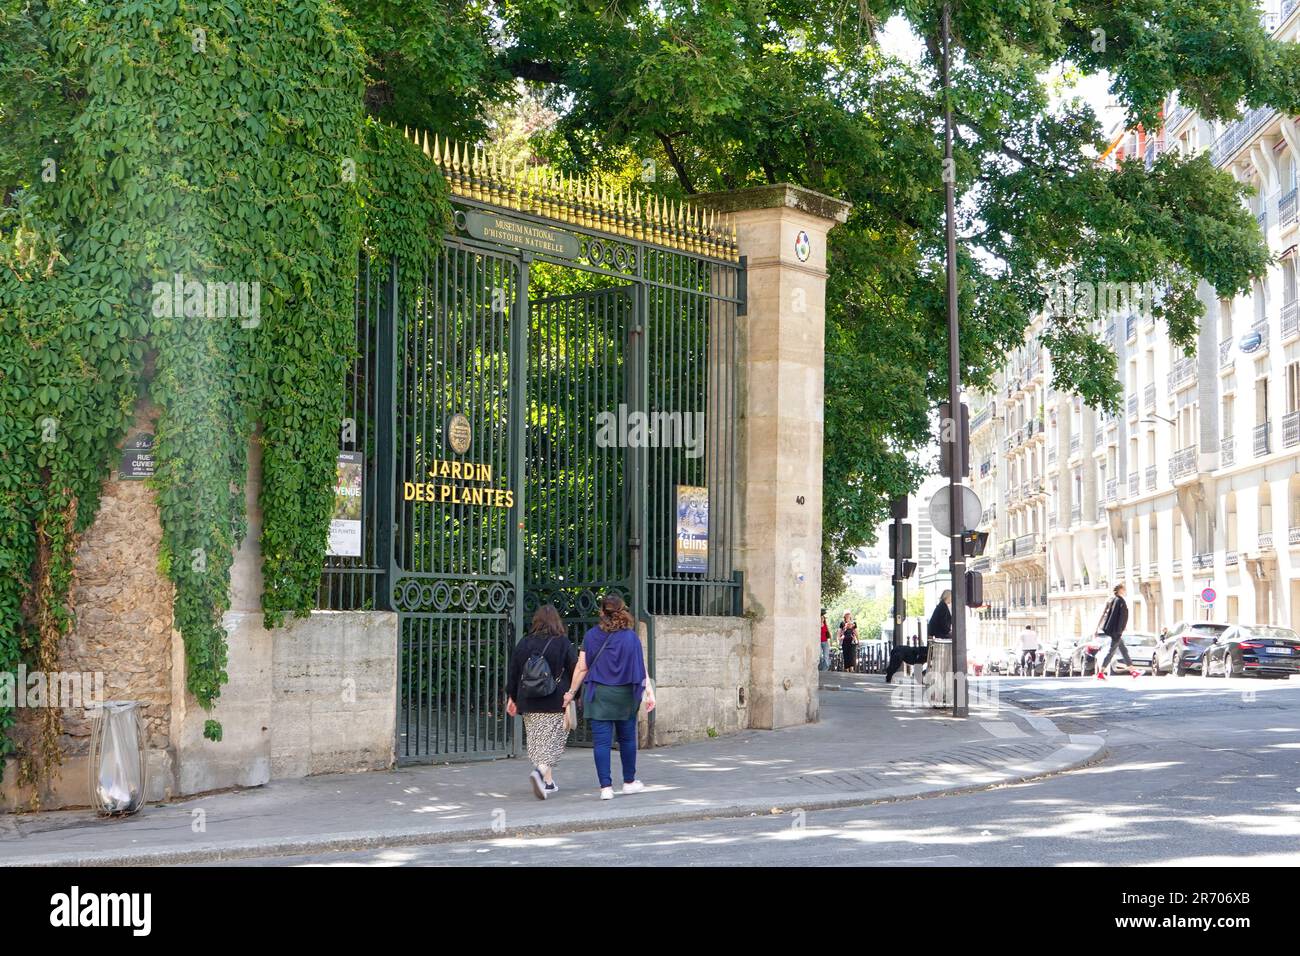 Beschilderung am Eingang zum Jardin des Plantes, wenn Menschen in den öffentlichen botanischen Garten im 5. Arrondissement, Paris, Frankreich betreten/verlassen. Stockfoto